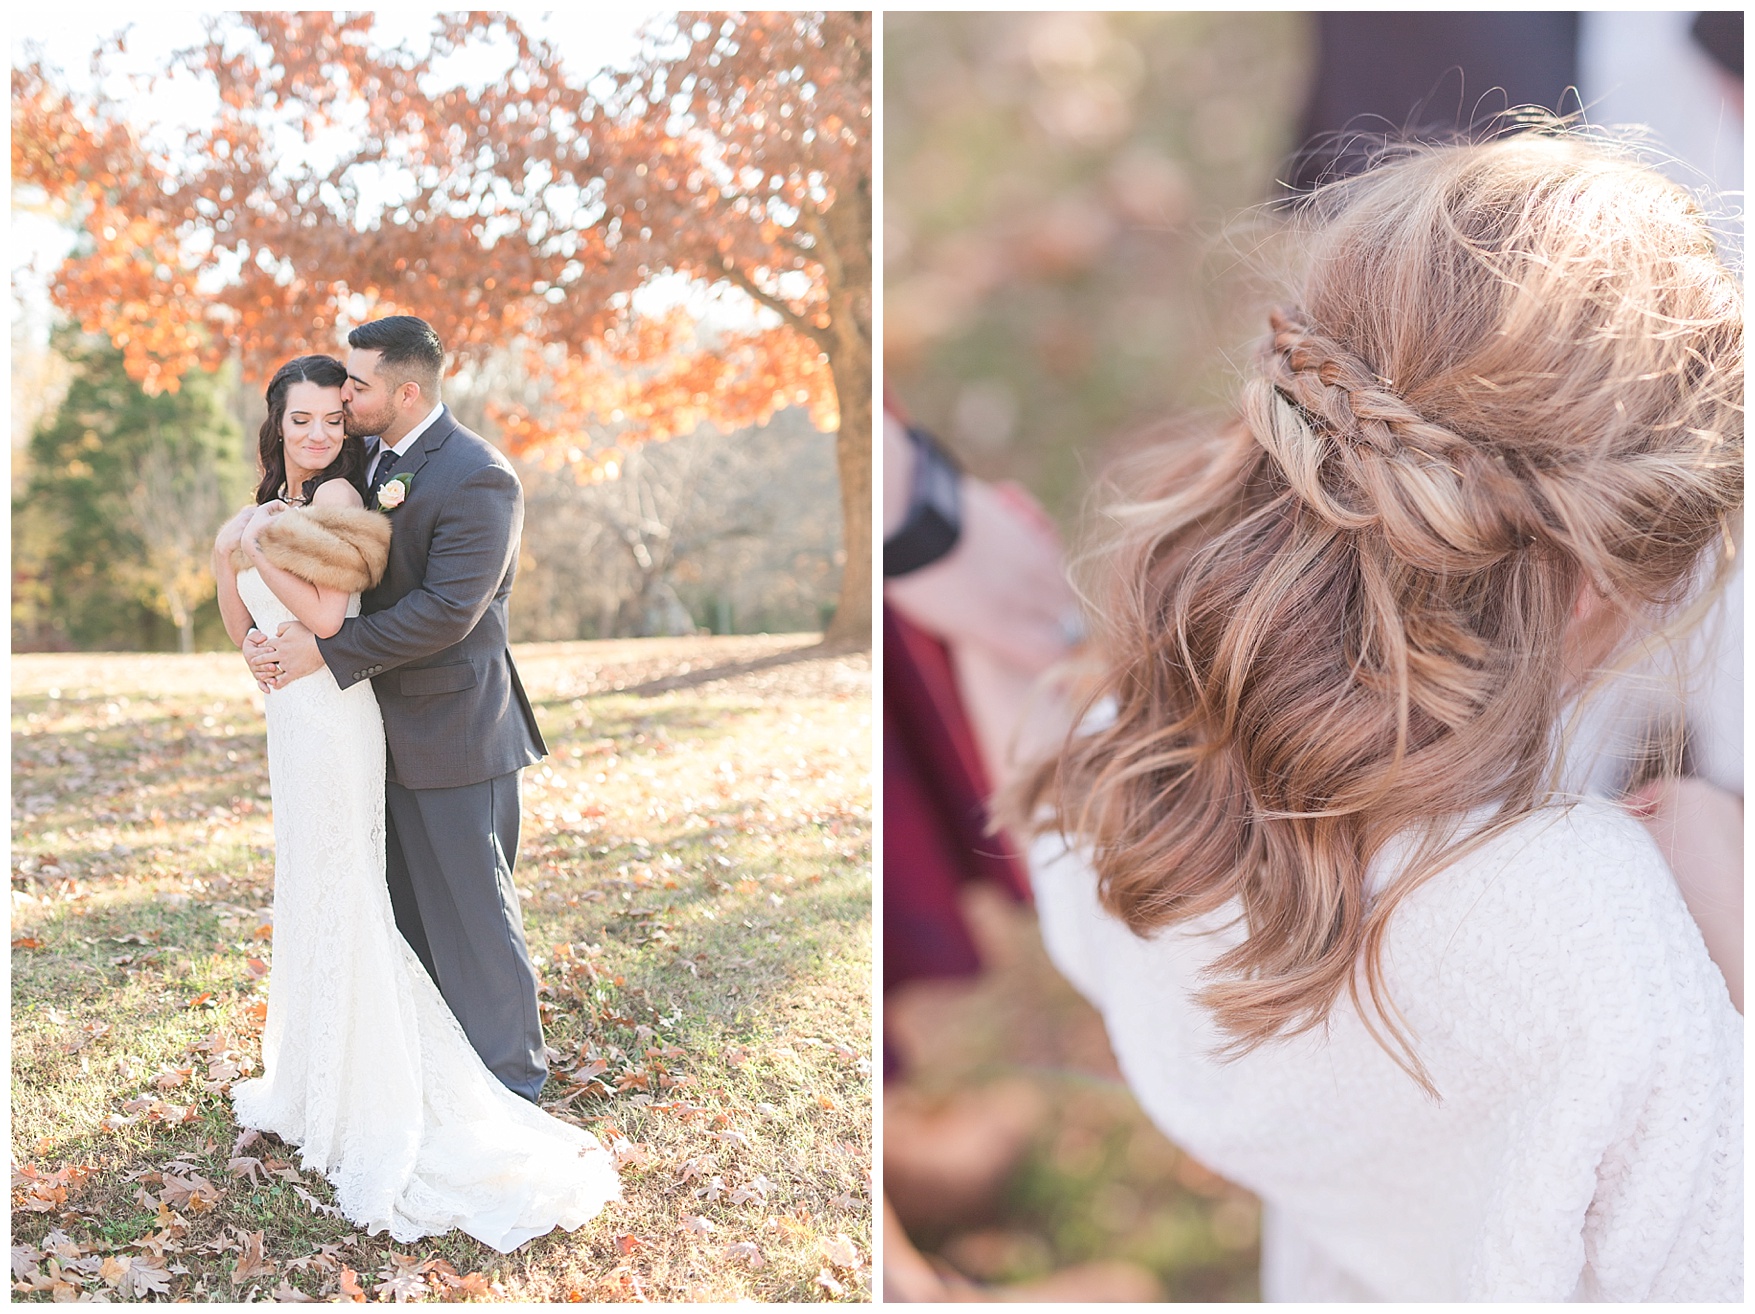 Fall elopement in Lynchburg, Virginia || Central Virginia Wedding Photographer || www.ashleyeiban.com